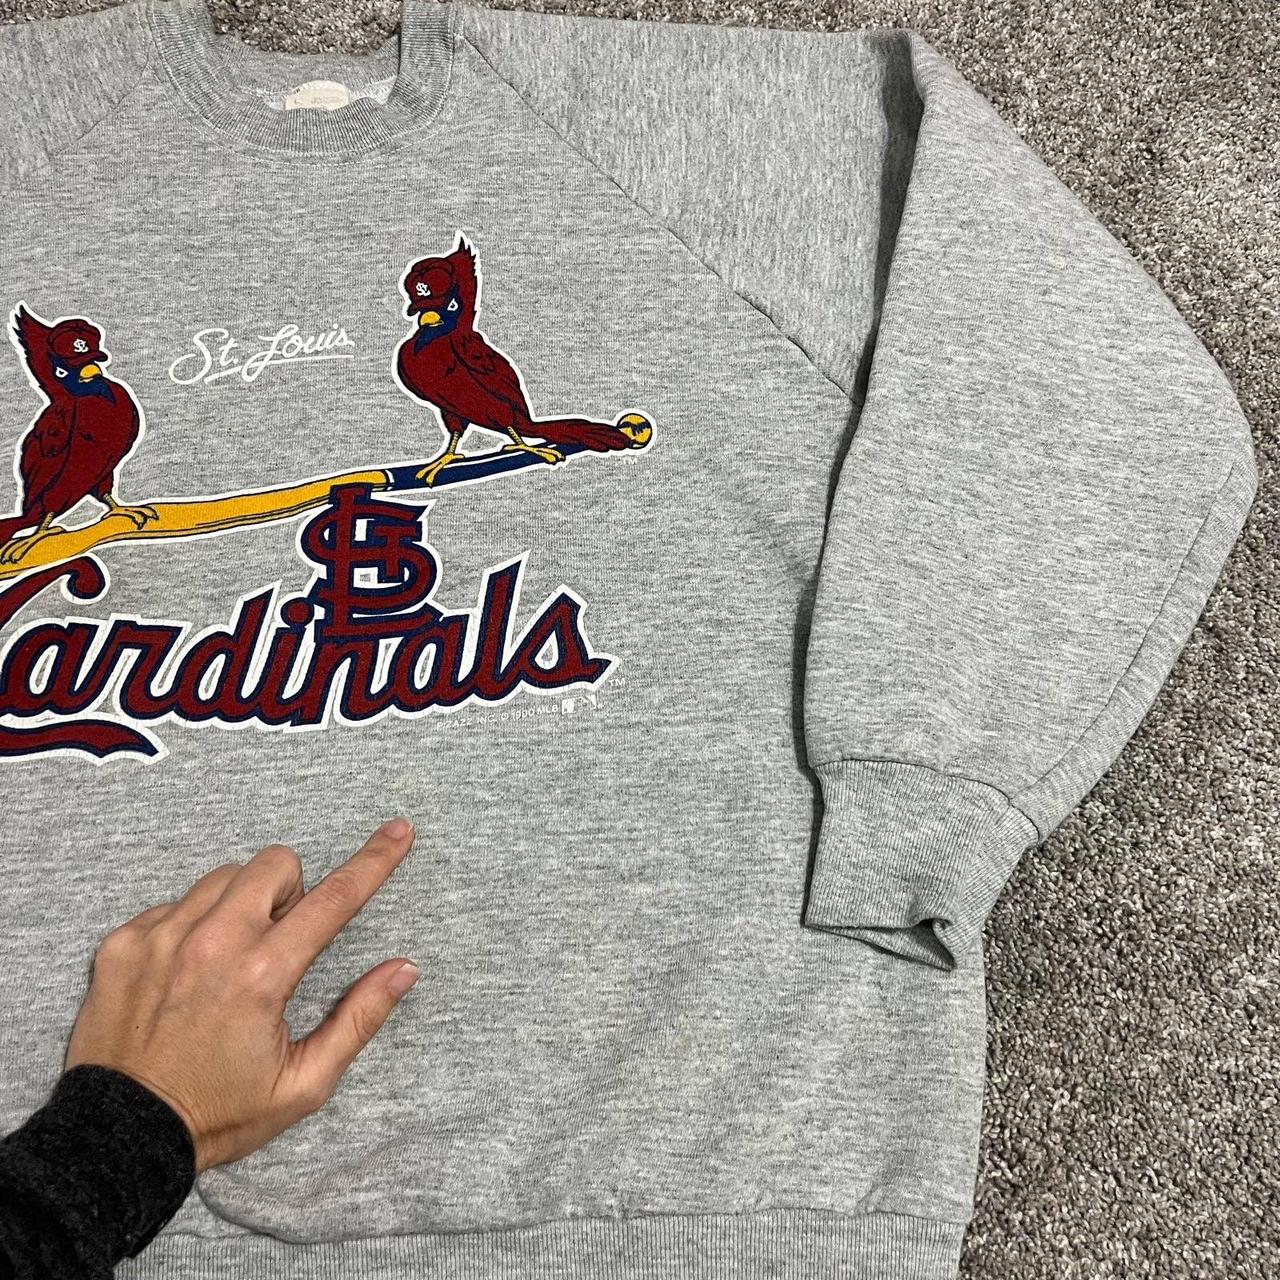 vintage 90s st. louis cardinals sweatshirt size L - Depop